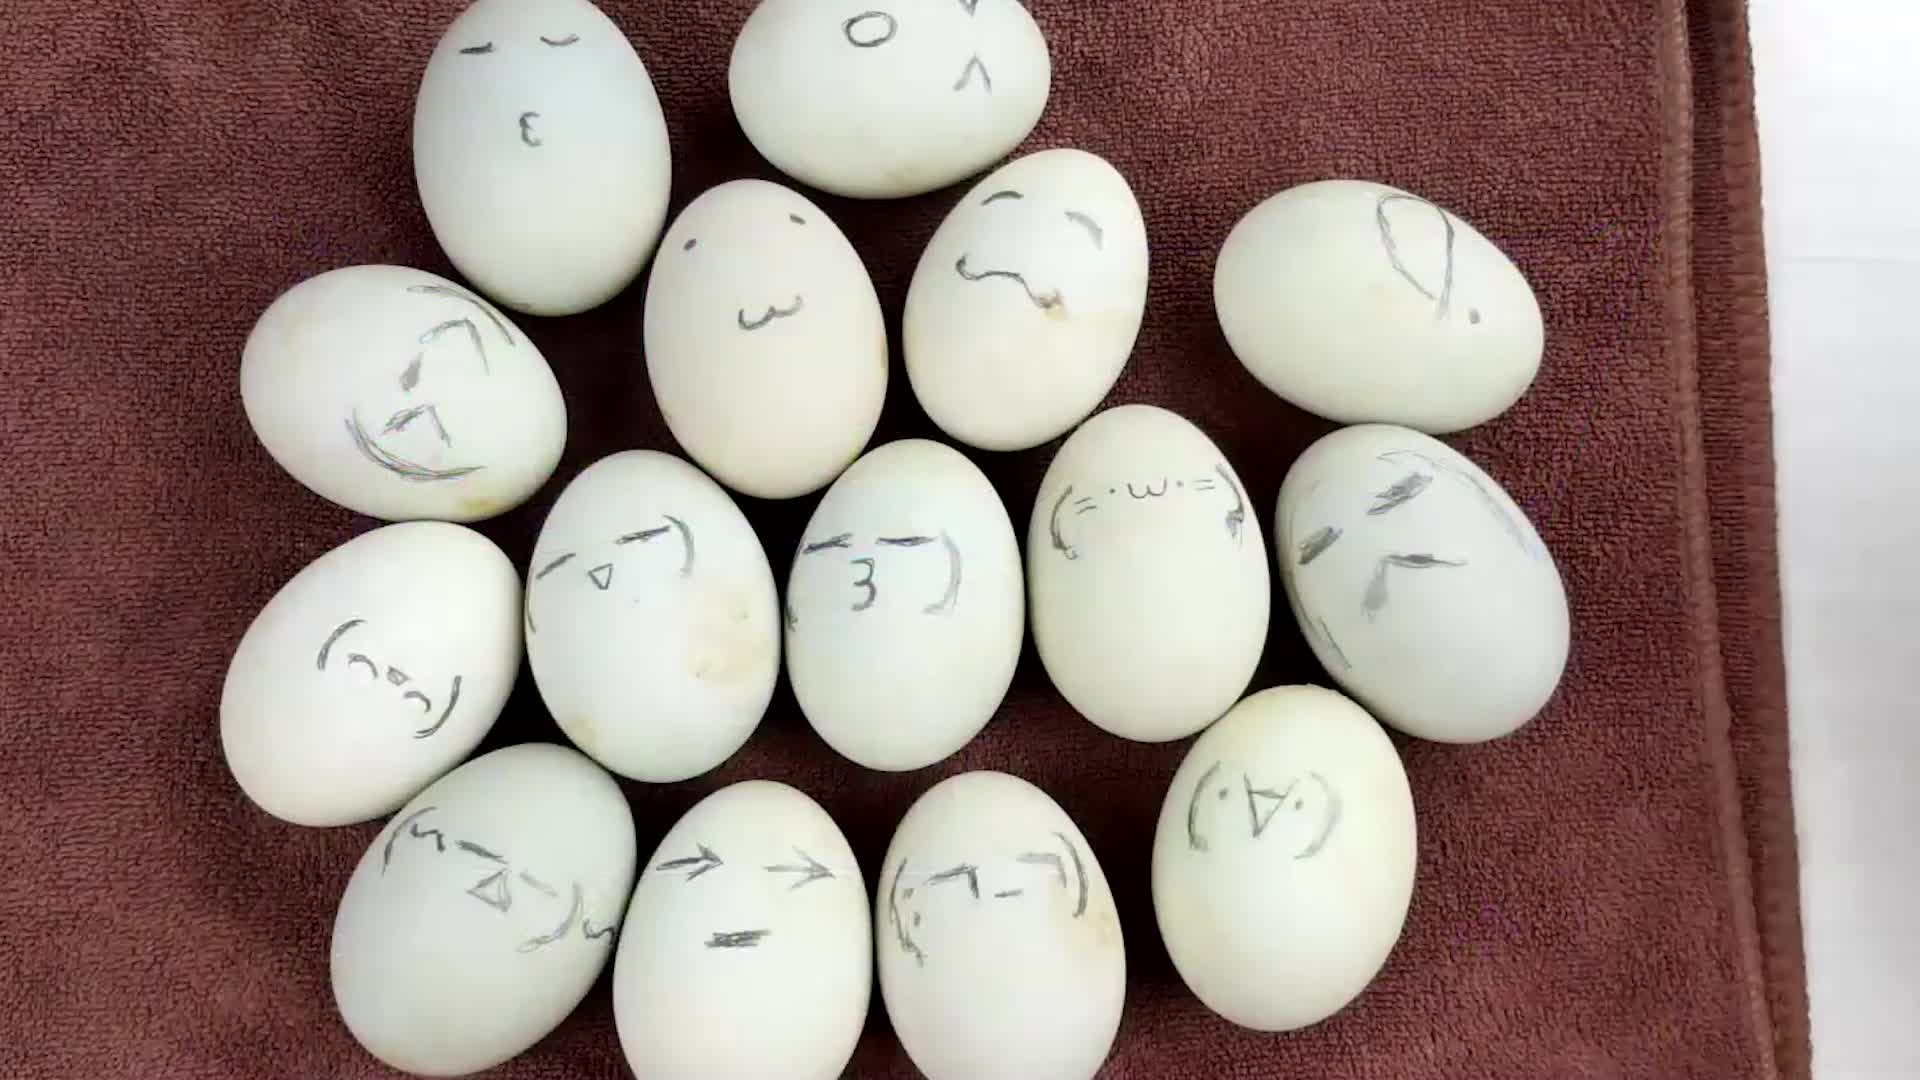 运动的鸡蛋去撞静止的鸡蛋，哪个先碎？  #硬核拆解 